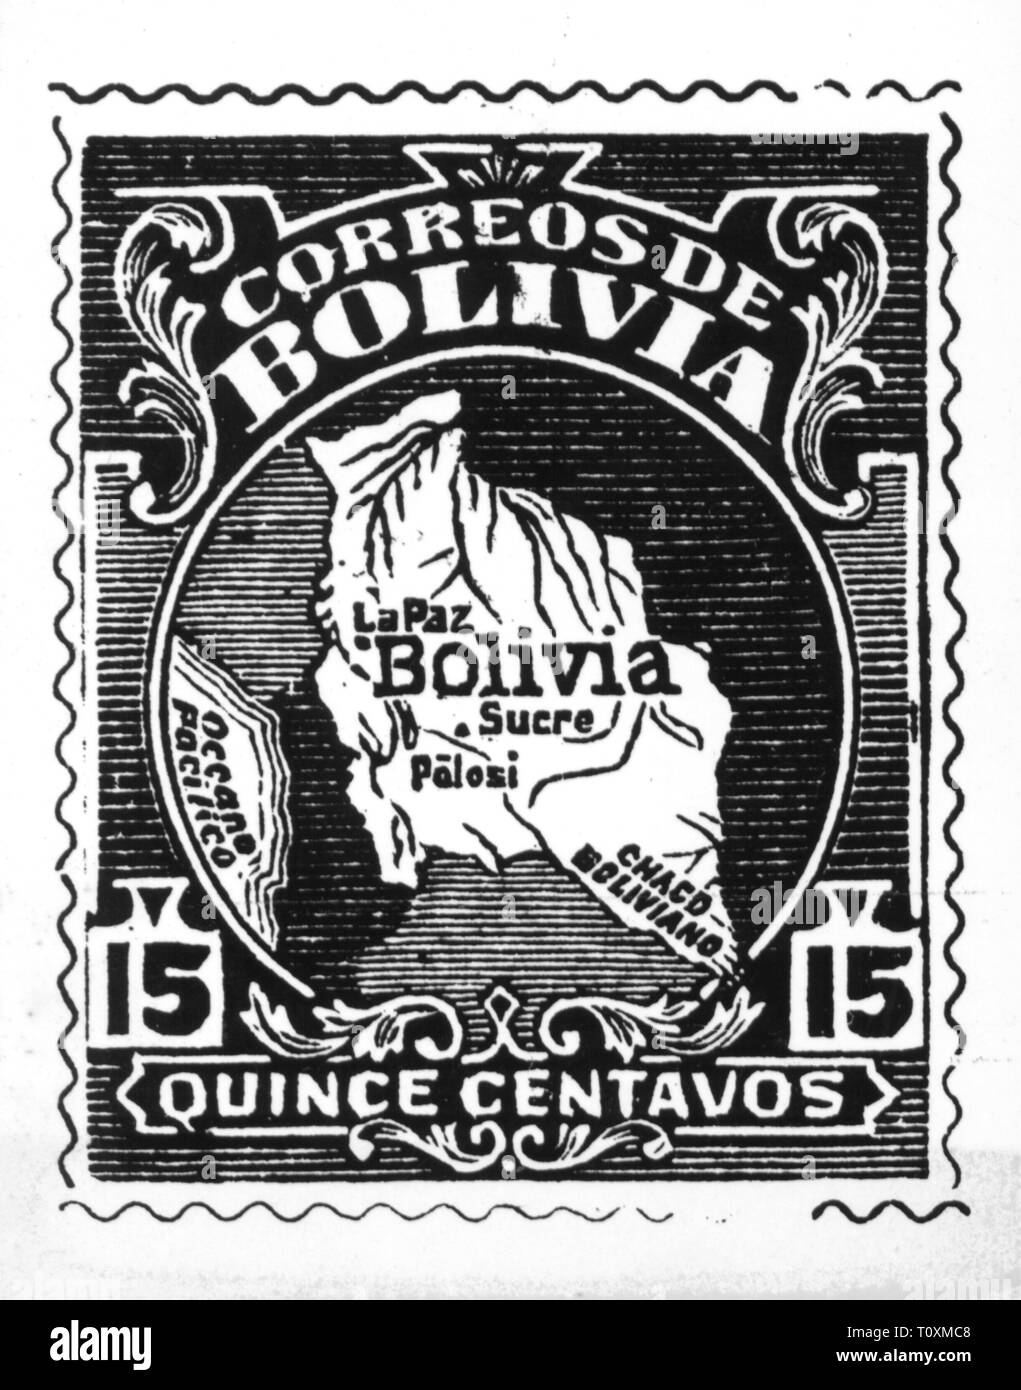 La poste, timbres, Bolivie, 15 centavos timbre-poste, la carte, la date de publication : 1919, Additional-Rights Clearance-Info-Not-Available- Banque D'Images